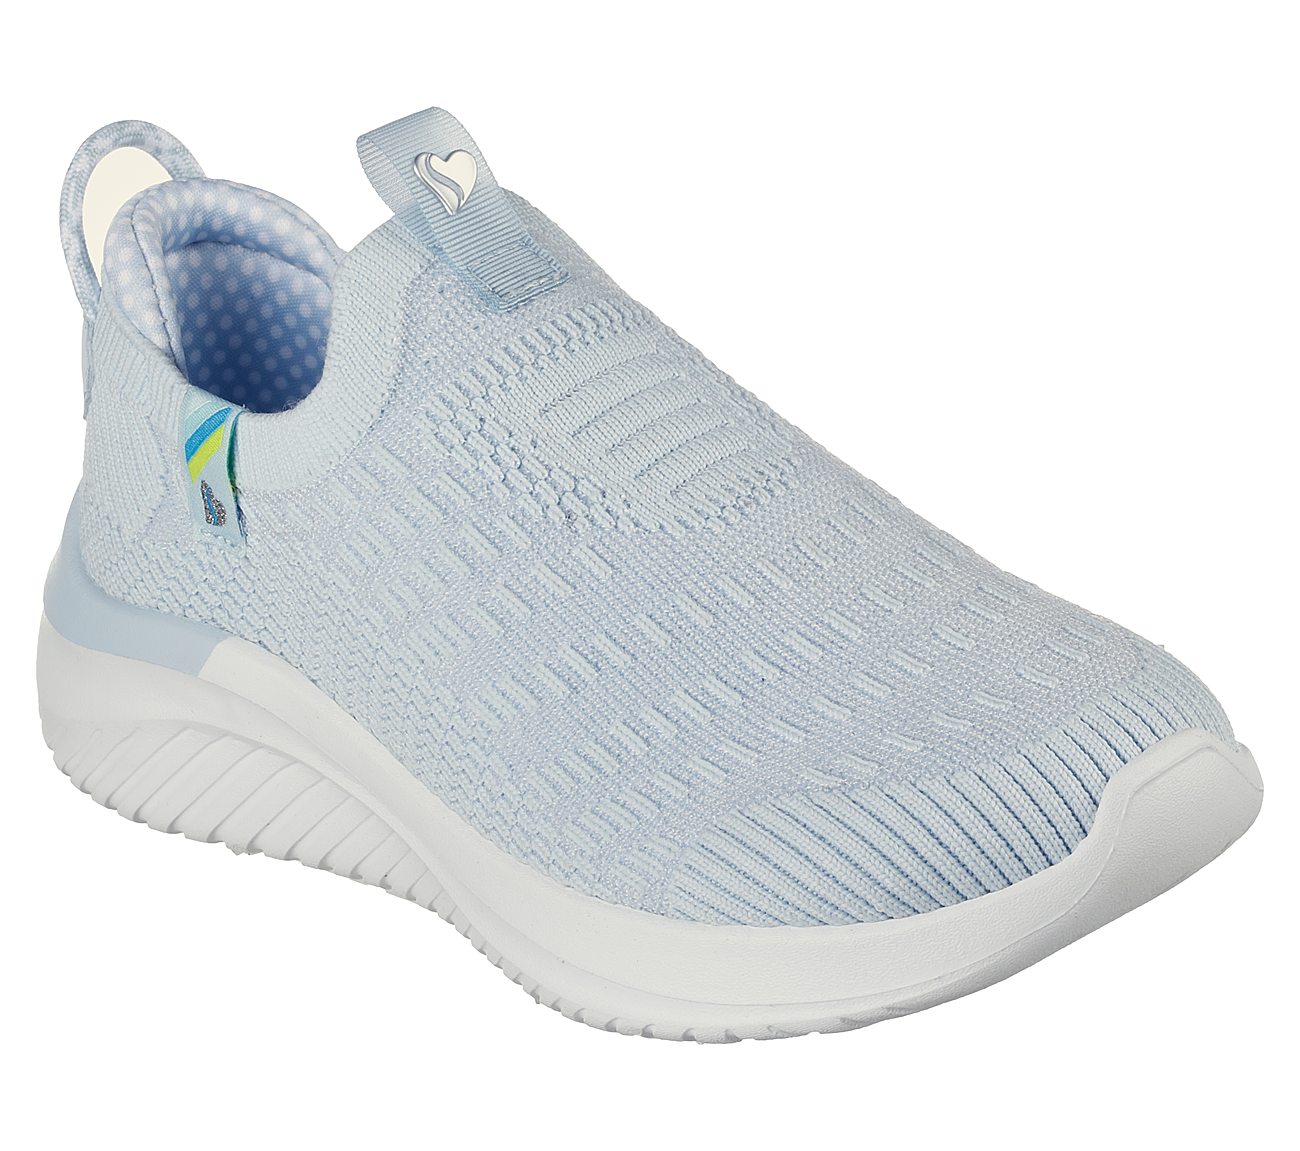 ULTRA FLEX 3.0 - HAPPY BRIGHT, LLIGHT BLUE Footwear Right View